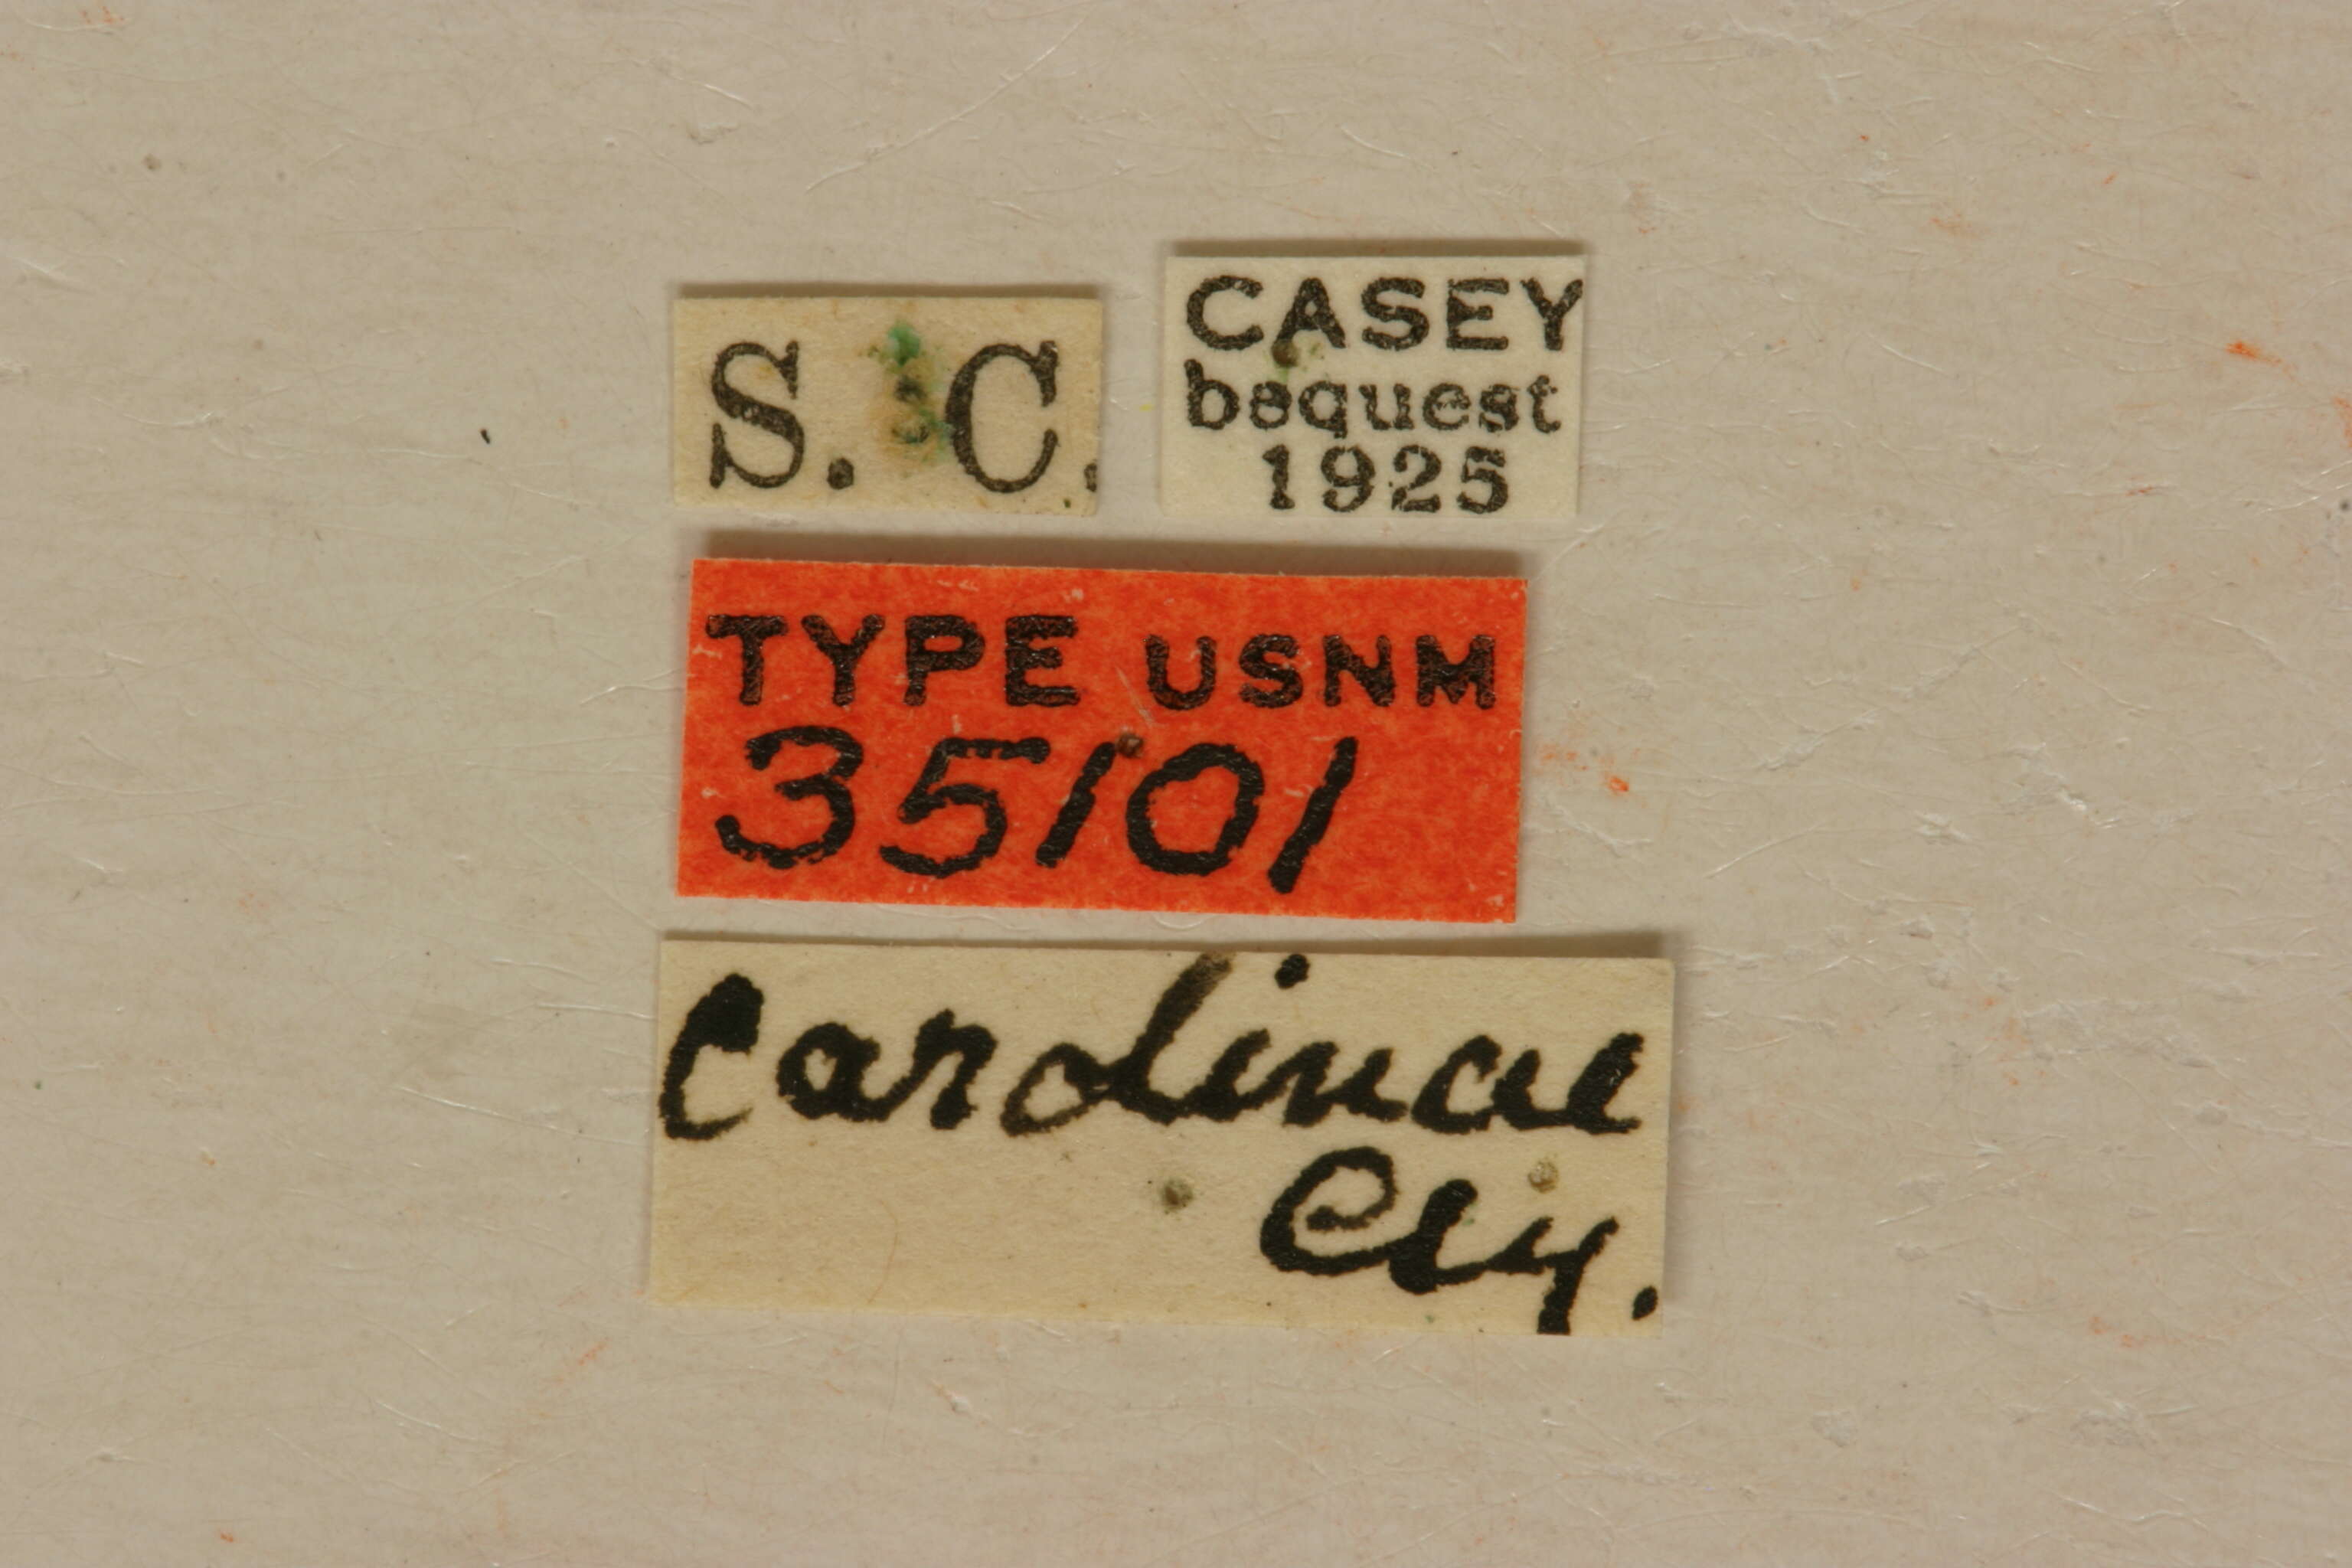 Image of Ophistomis carolinae Casey 1913